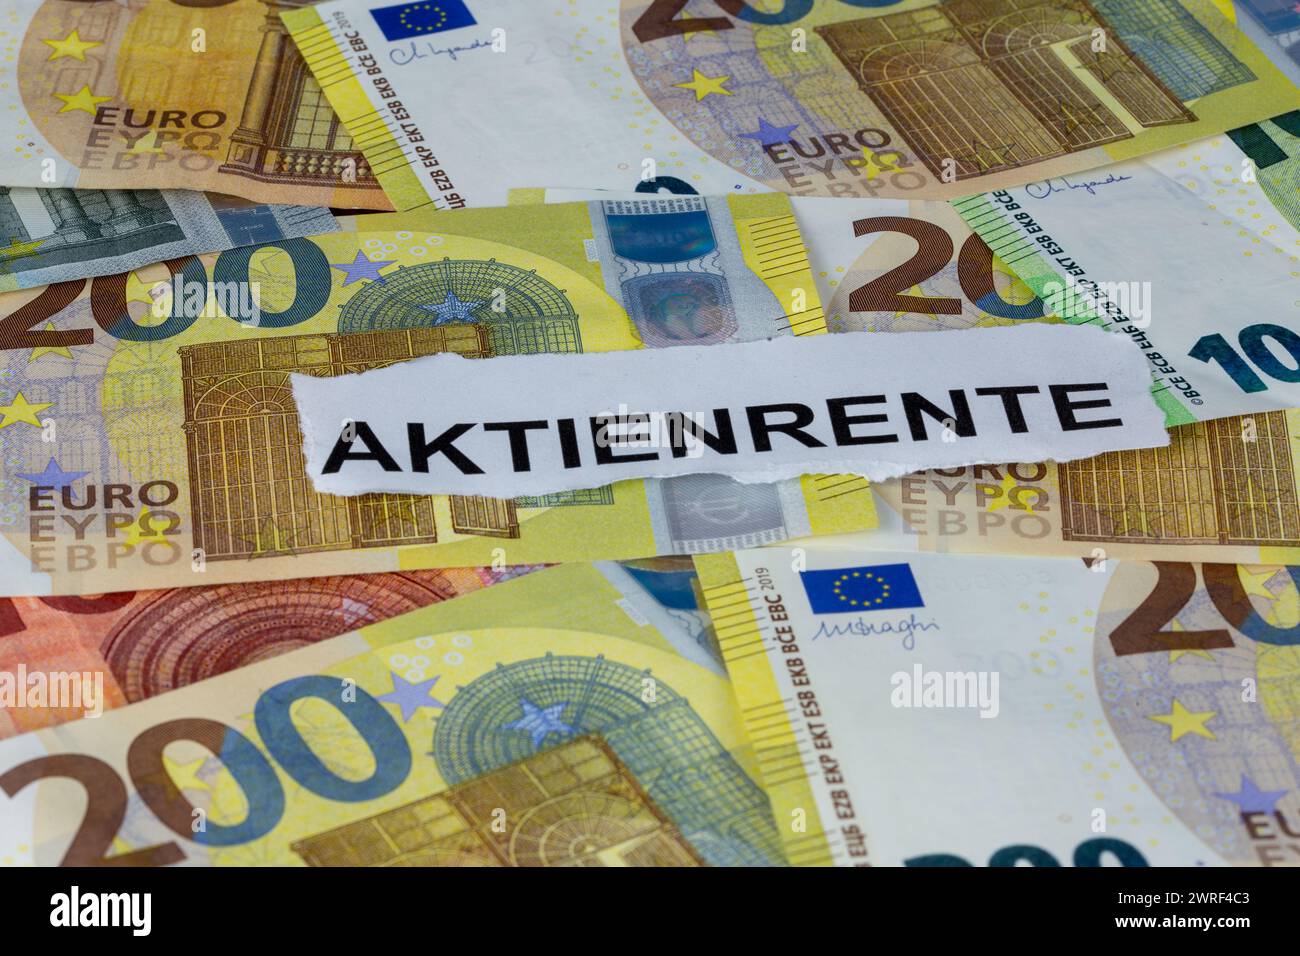 Le mot allemand AKTIENRENTE (quote-part rends) sur les billets en euros (image symbolique) Banque D'Images